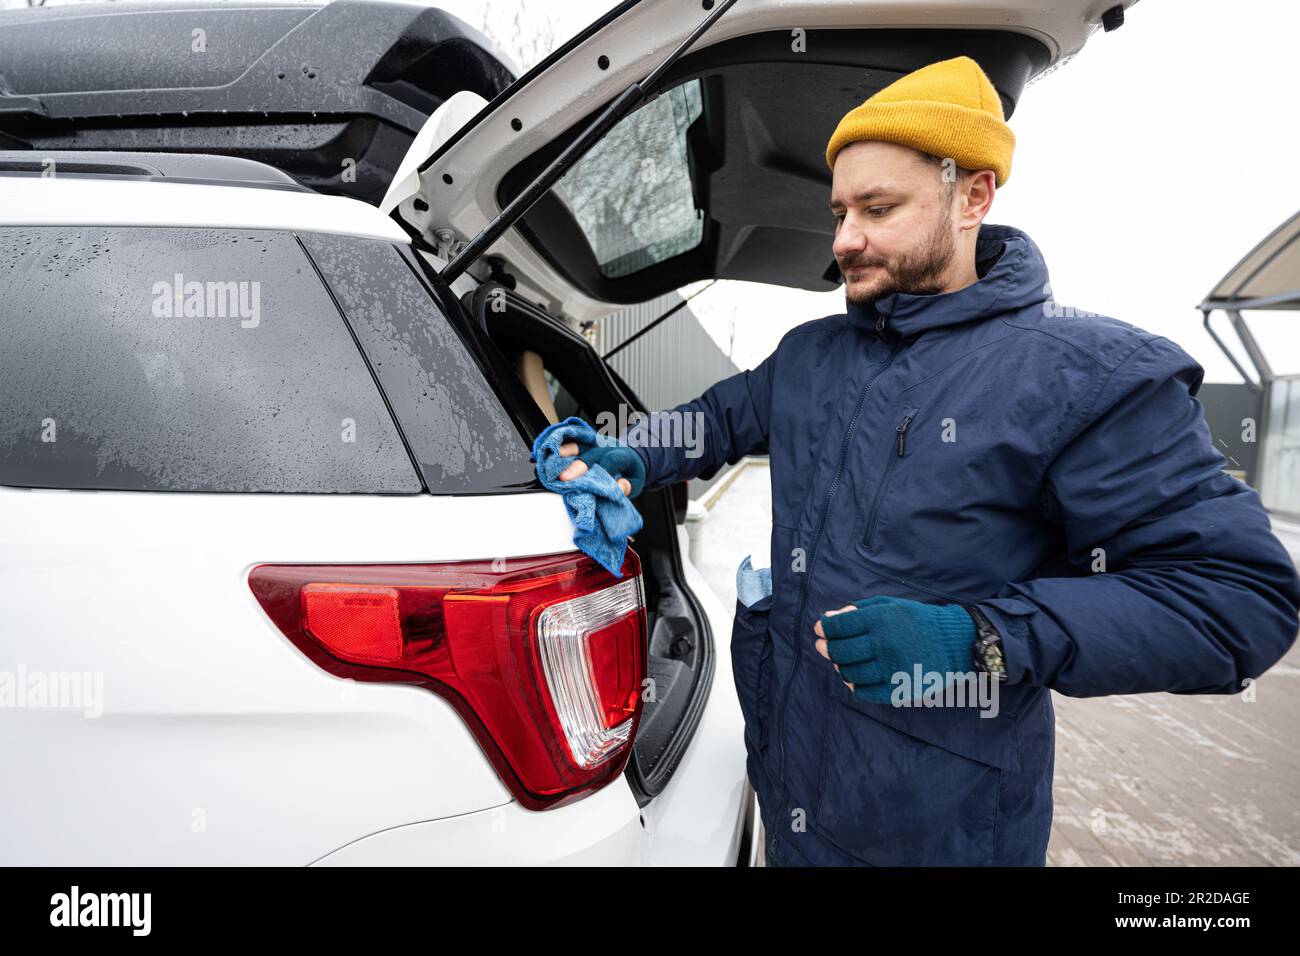 l'homme essuie la voiture suv américaine avec un chiffon en microfibre  après le lavage par temps froid. 21140545 Photo de stock chez Vecteezy